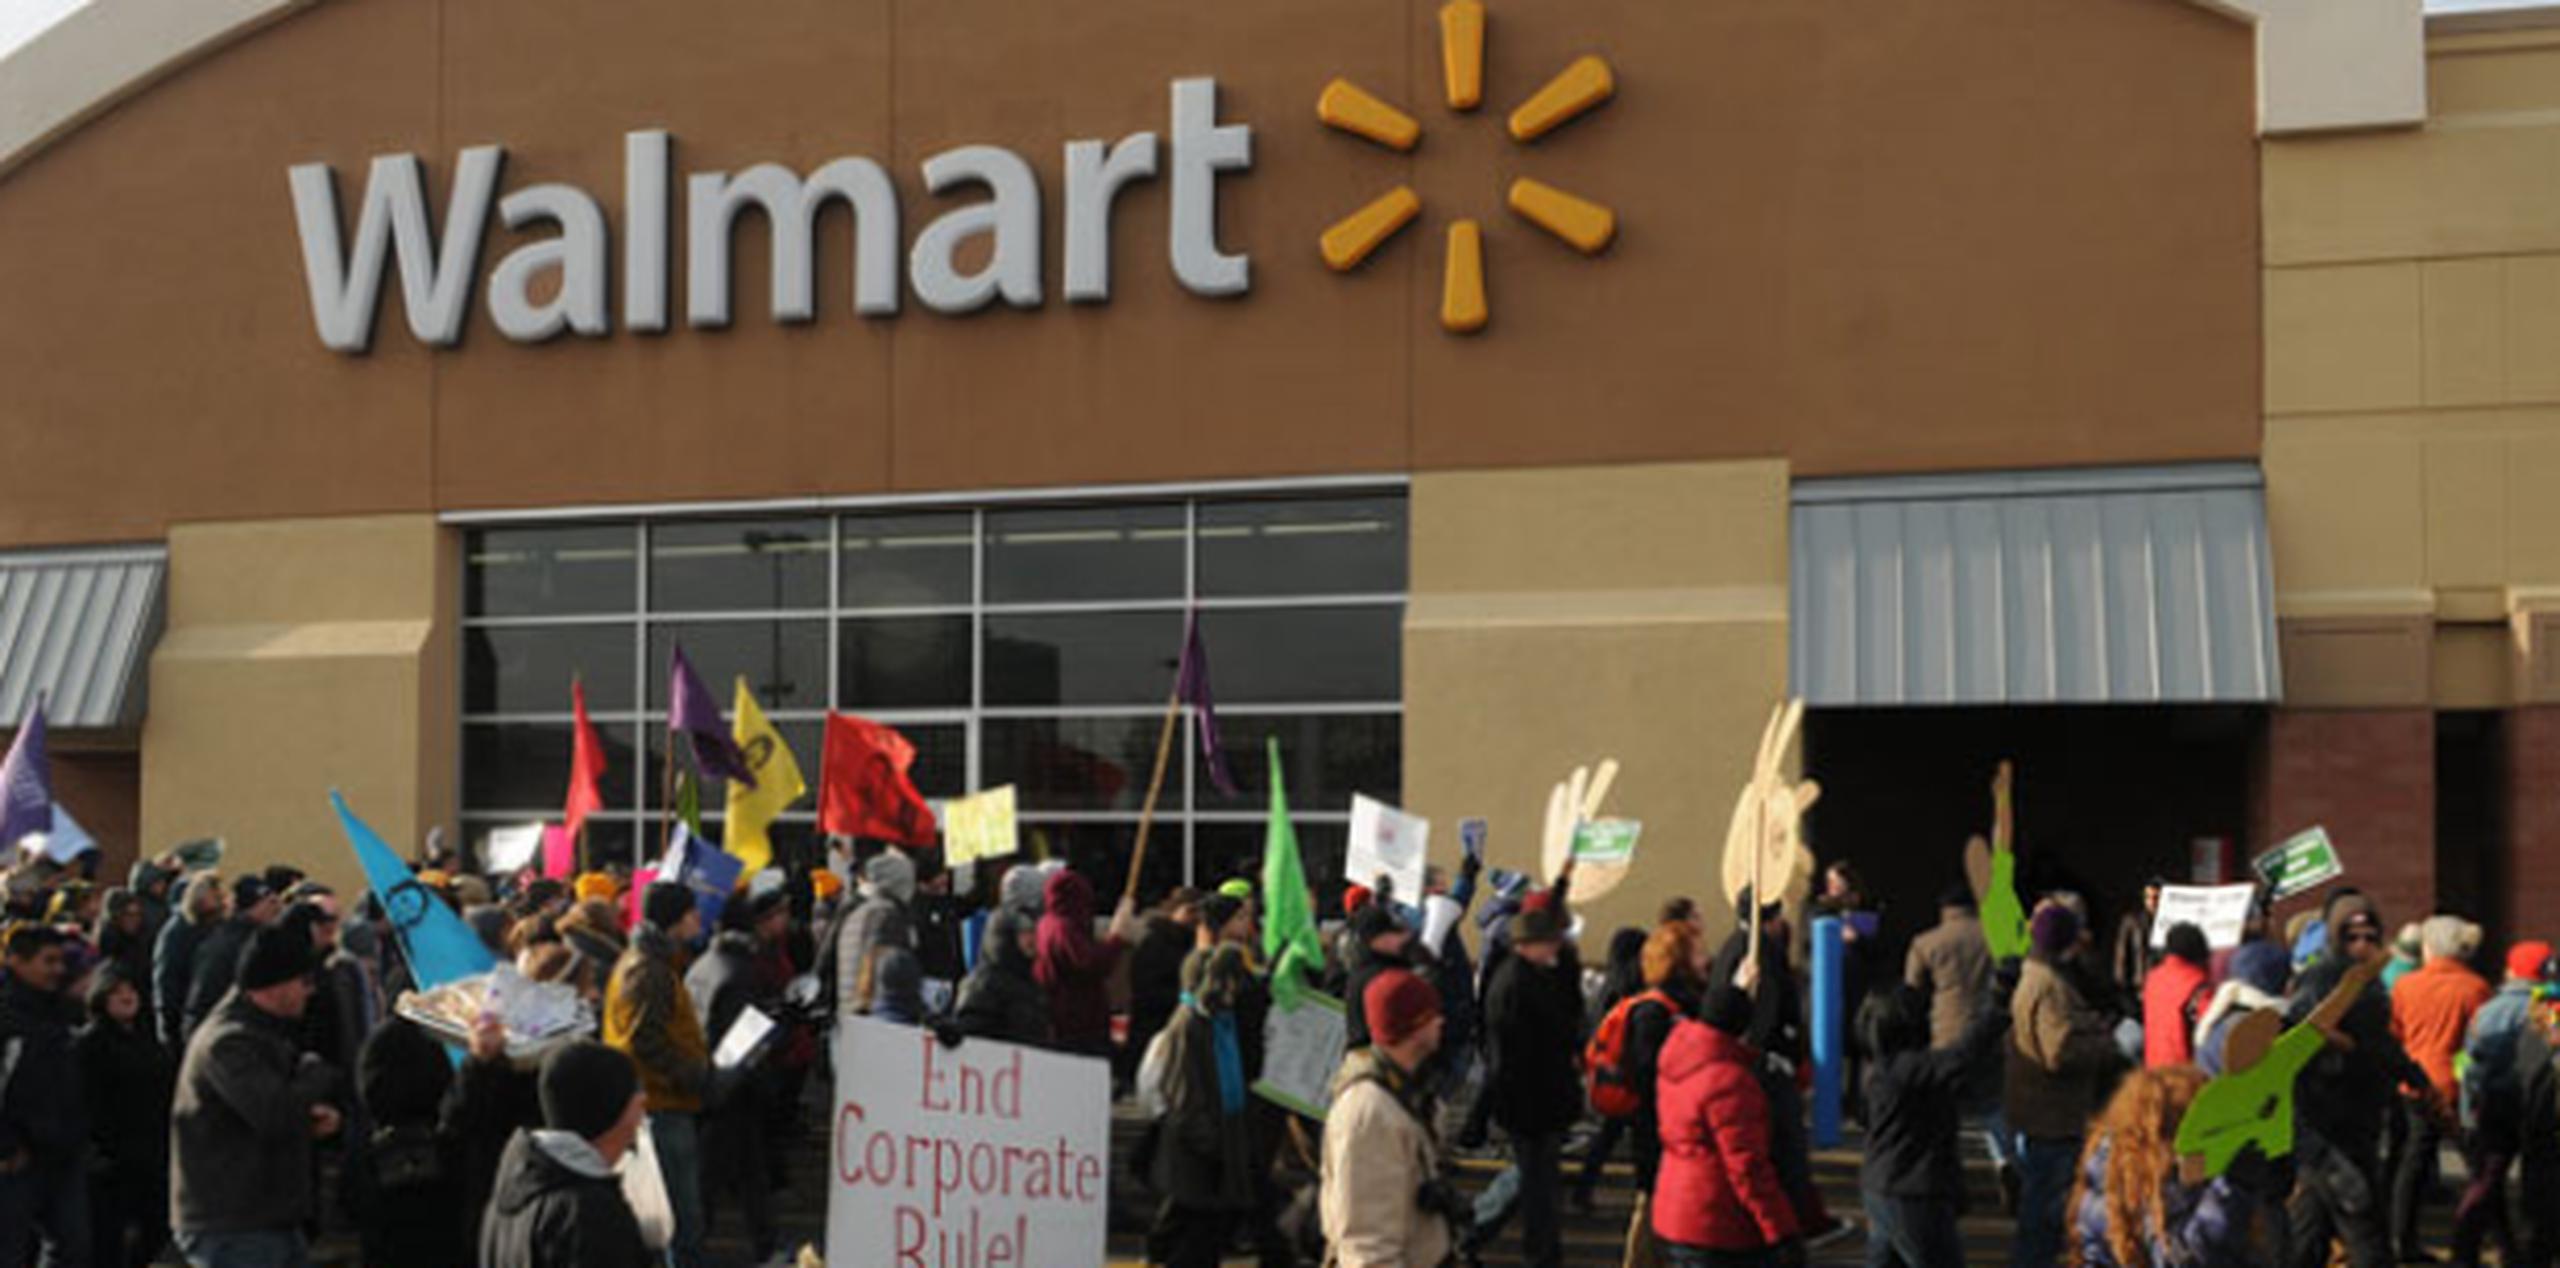 El ejecutivo destacó que la industria minorista es una de las pocas que ofrece "oportunidades de progreso en curso" y que Walmart promueve más de 430 asociados al día.  (AP/Scott Takushi)